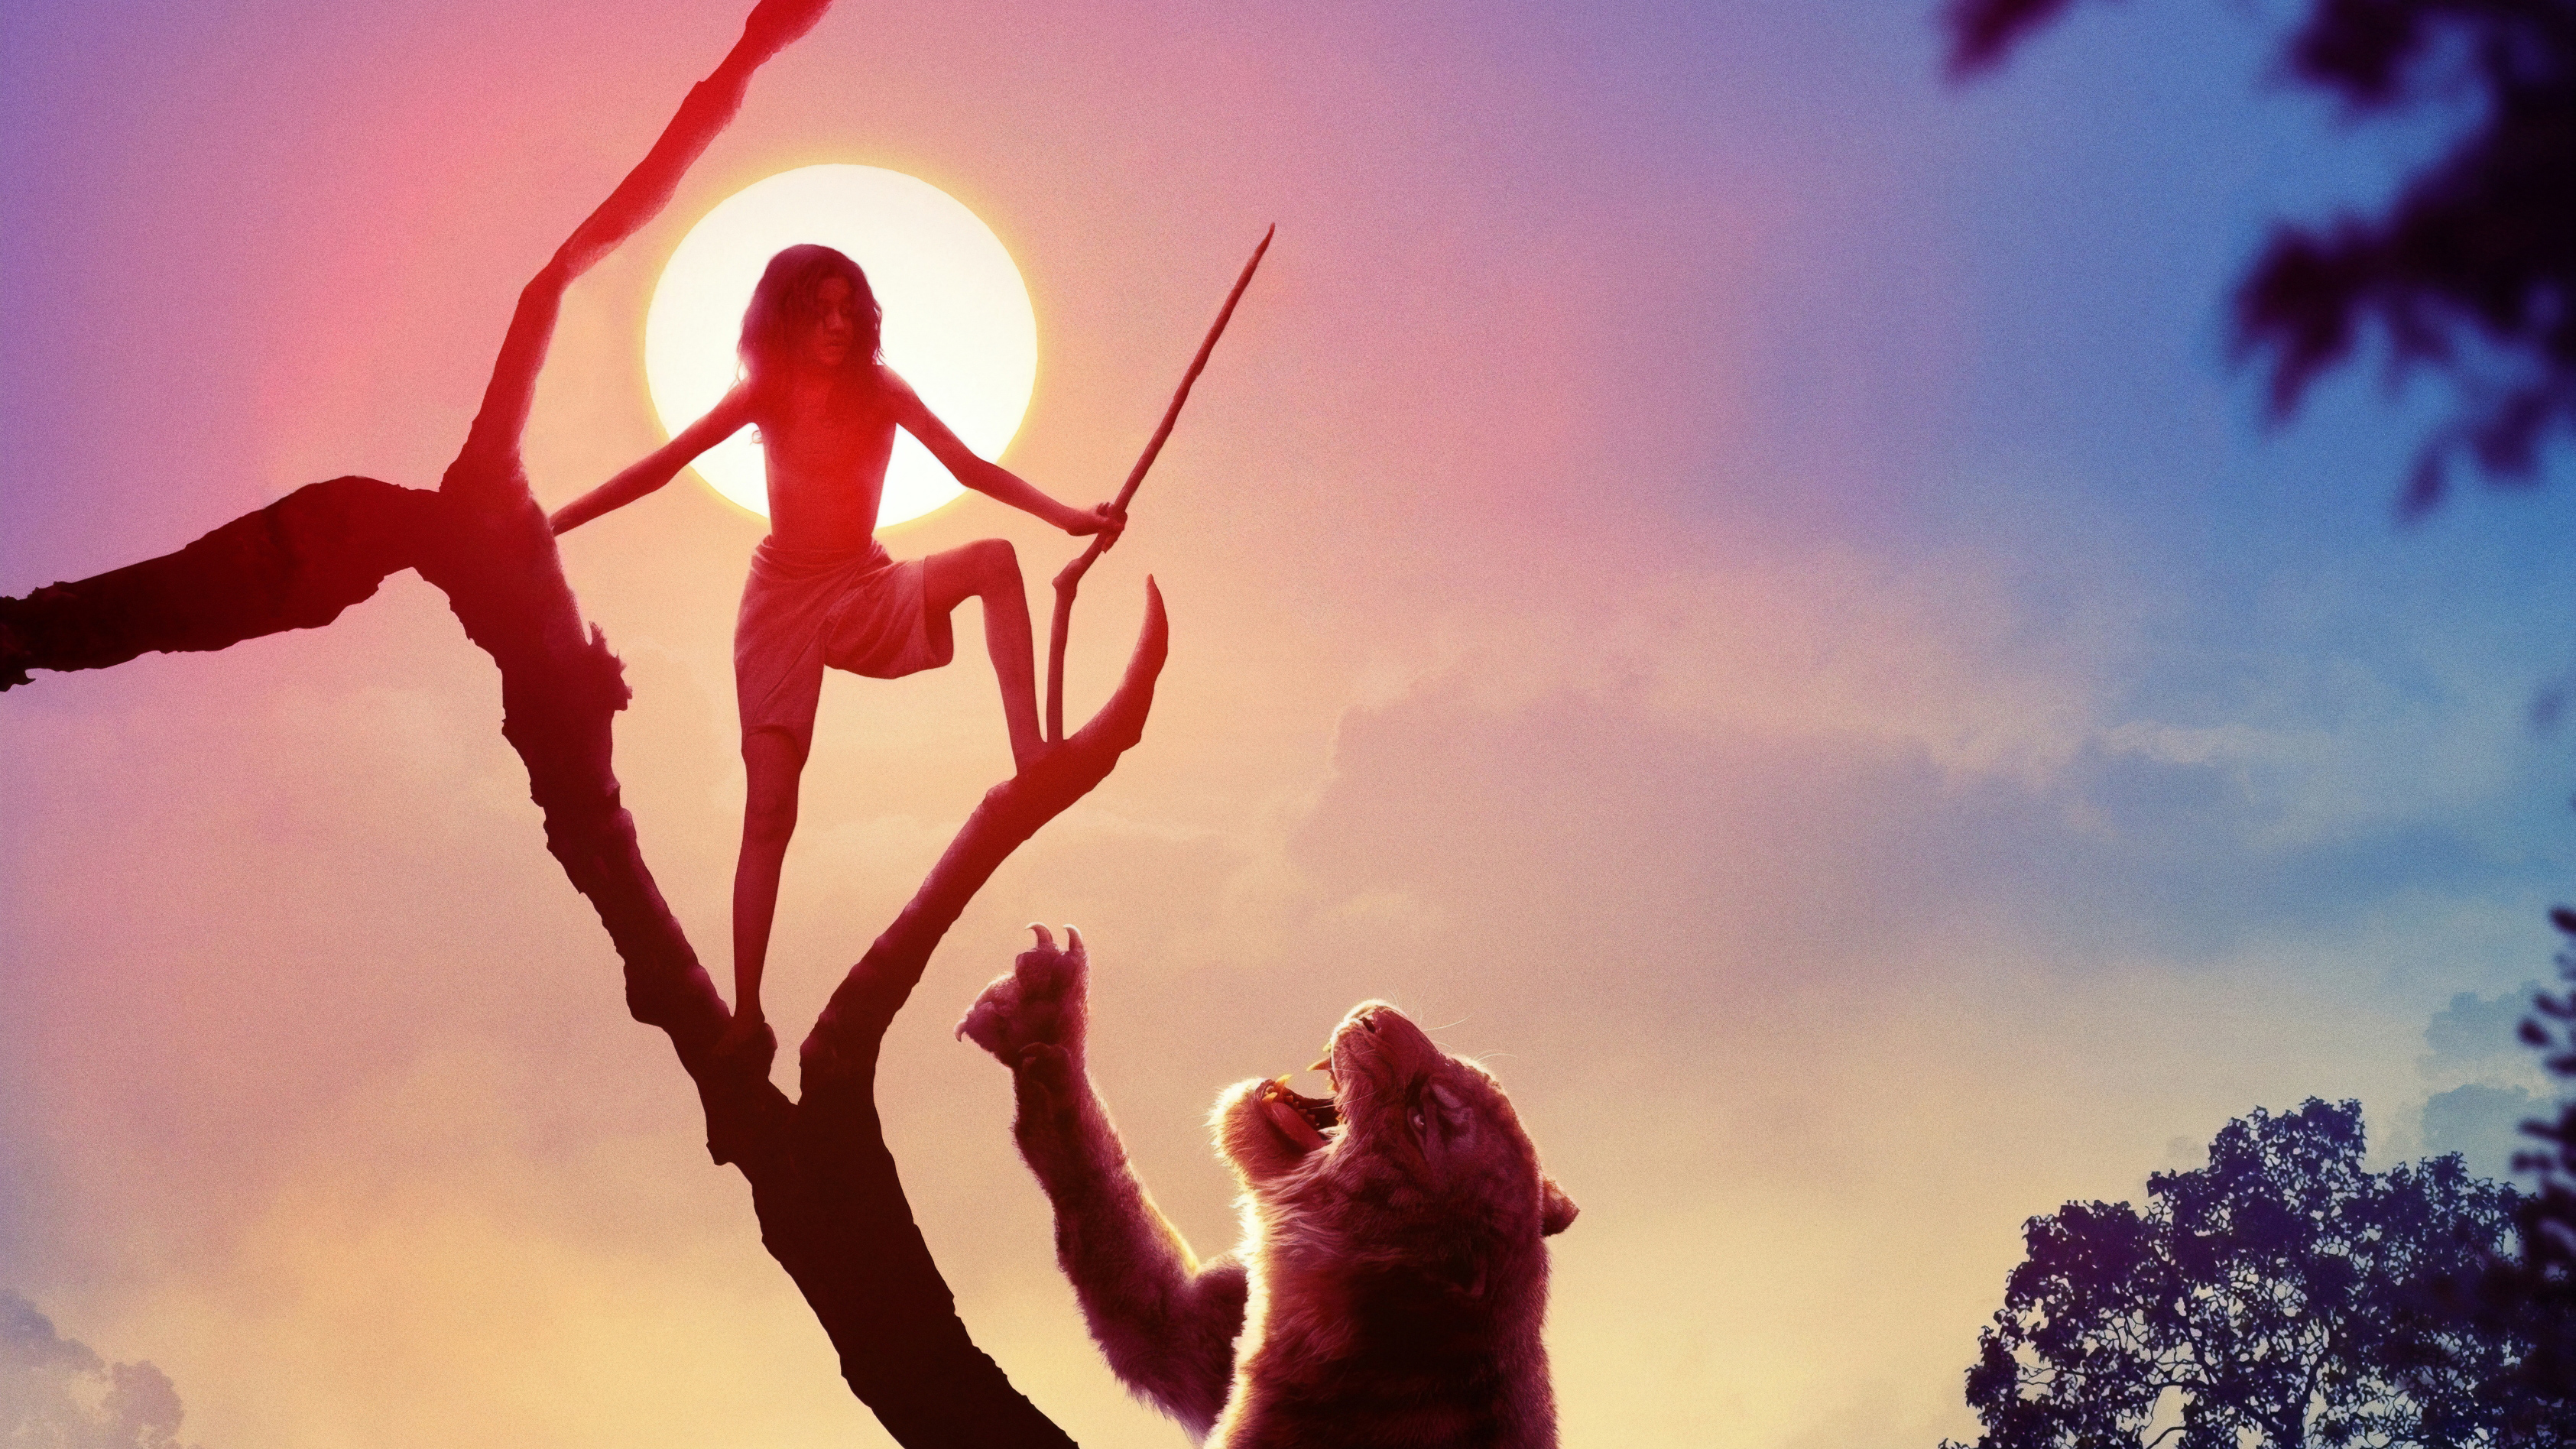 Скачать обои Маугли: Легенда Джунглей на телефон бесплатно